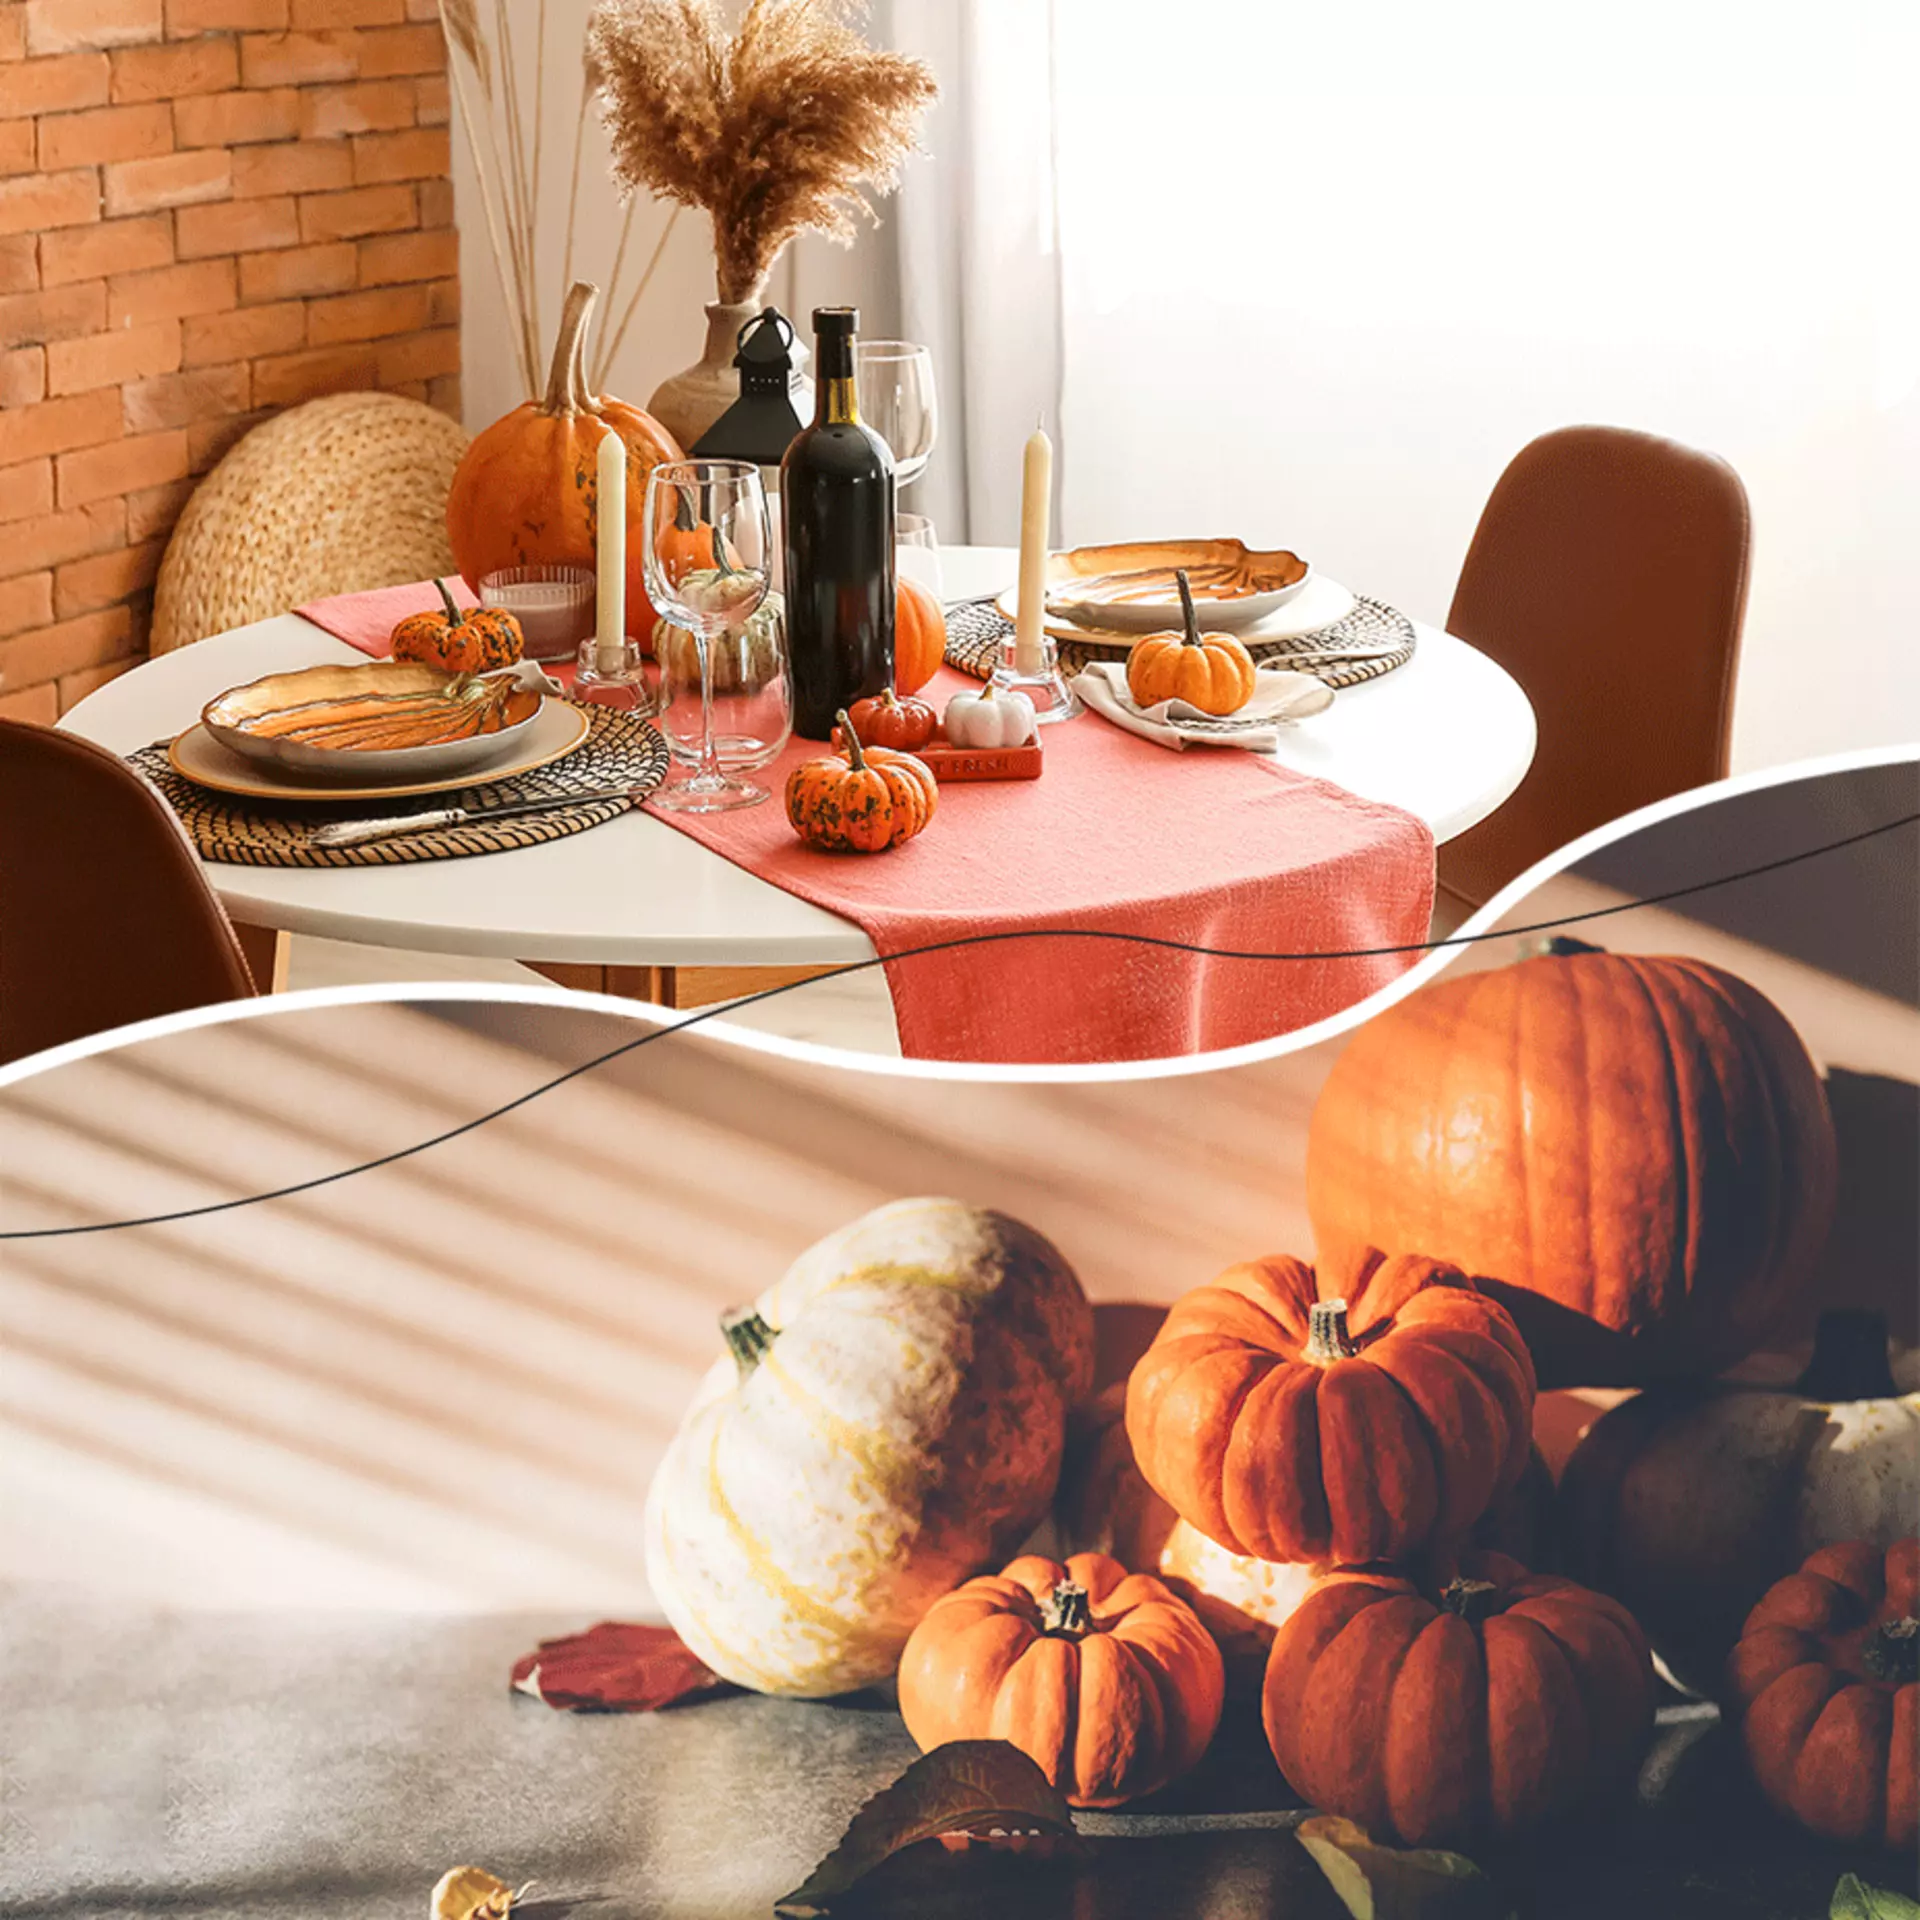 Erleben Sie einen genussvollen Herbst mit Möbel Inhofer! Shoppen Sie jetzt den Look einfach nach!  ﻿